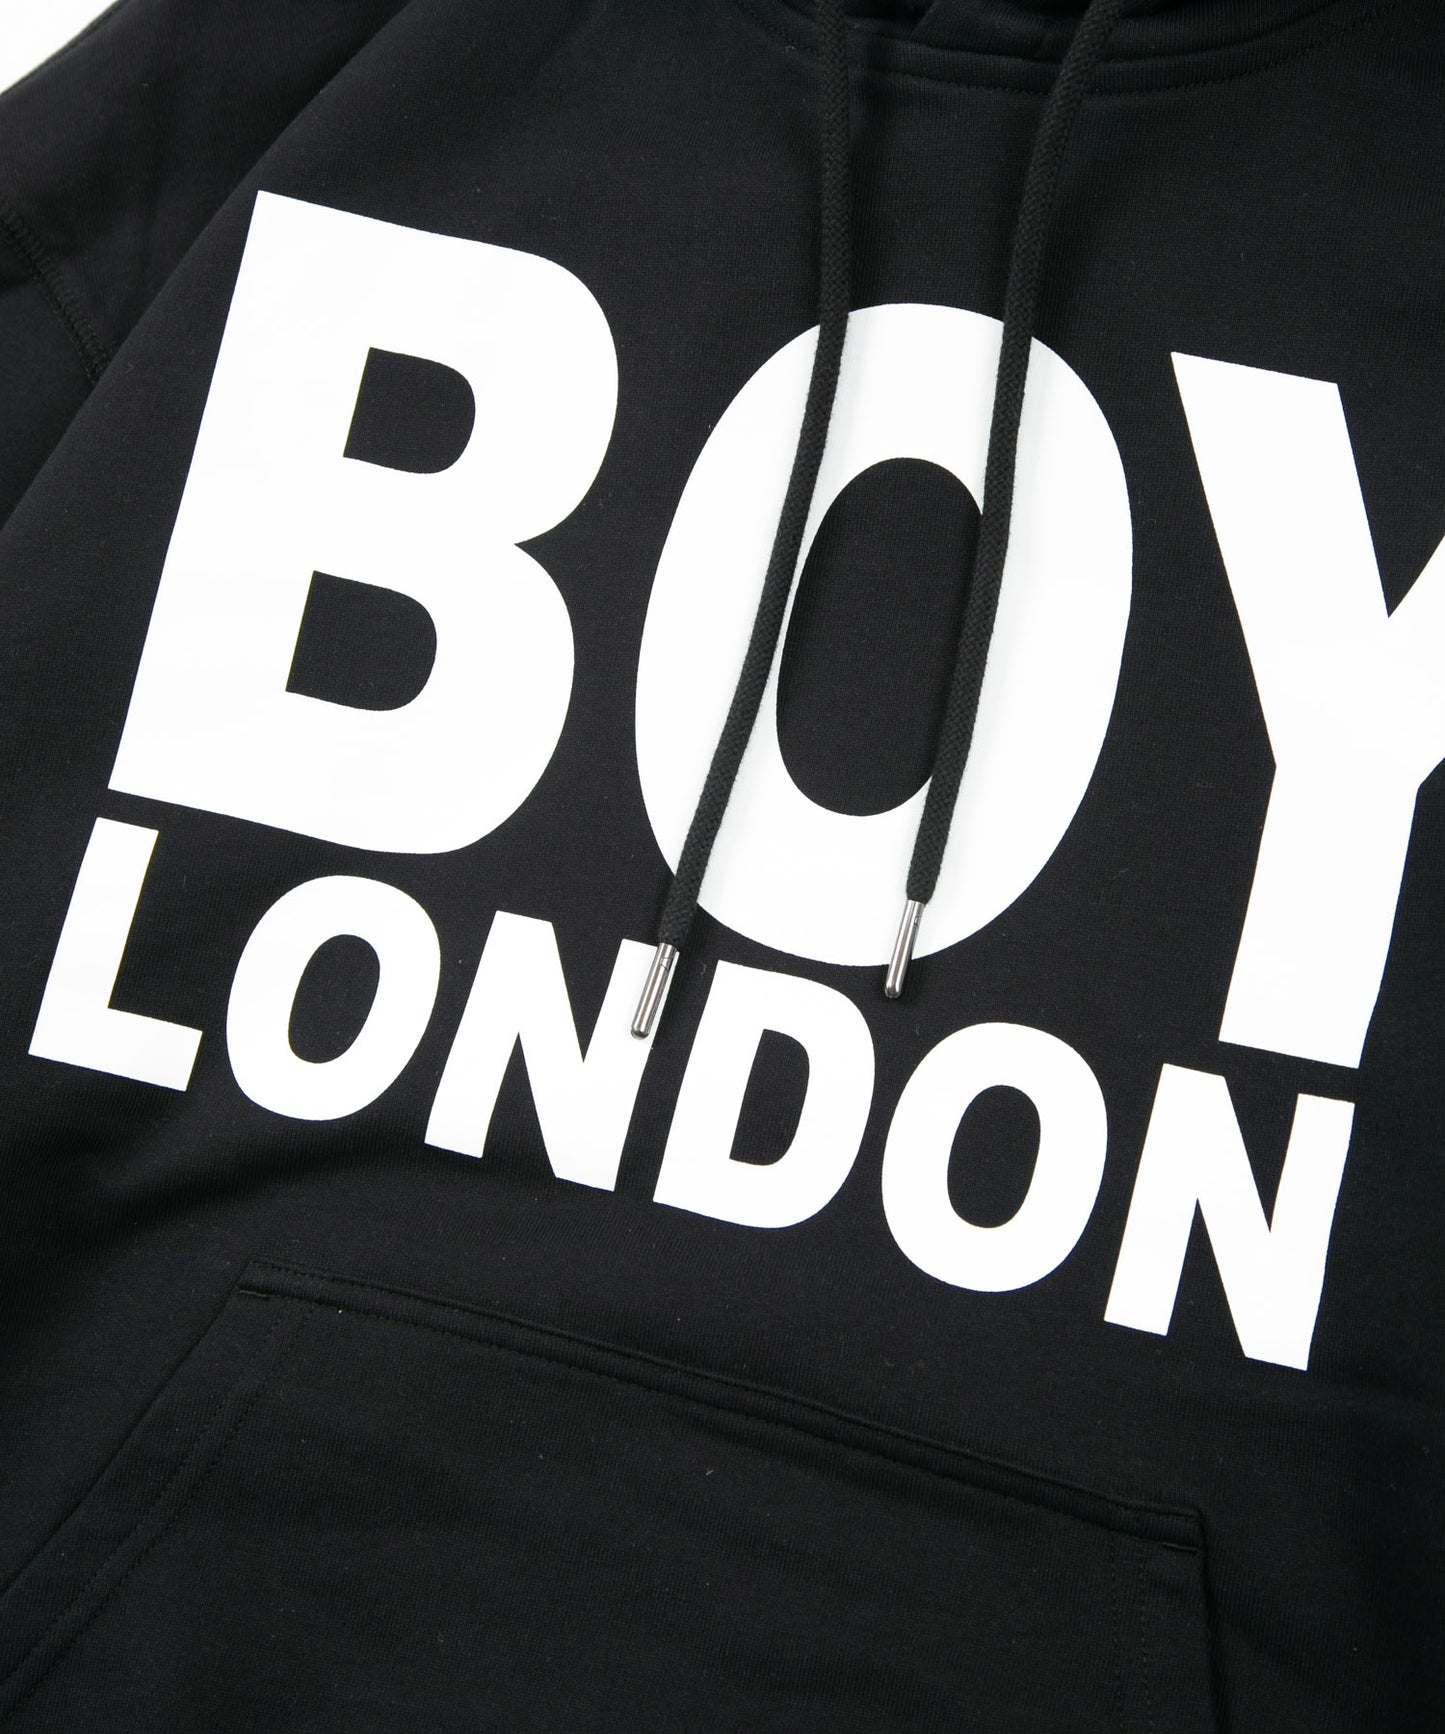 BOY LONDON LOGO PARKA BLACK×WHITE【AFJ-2102-PKB01】